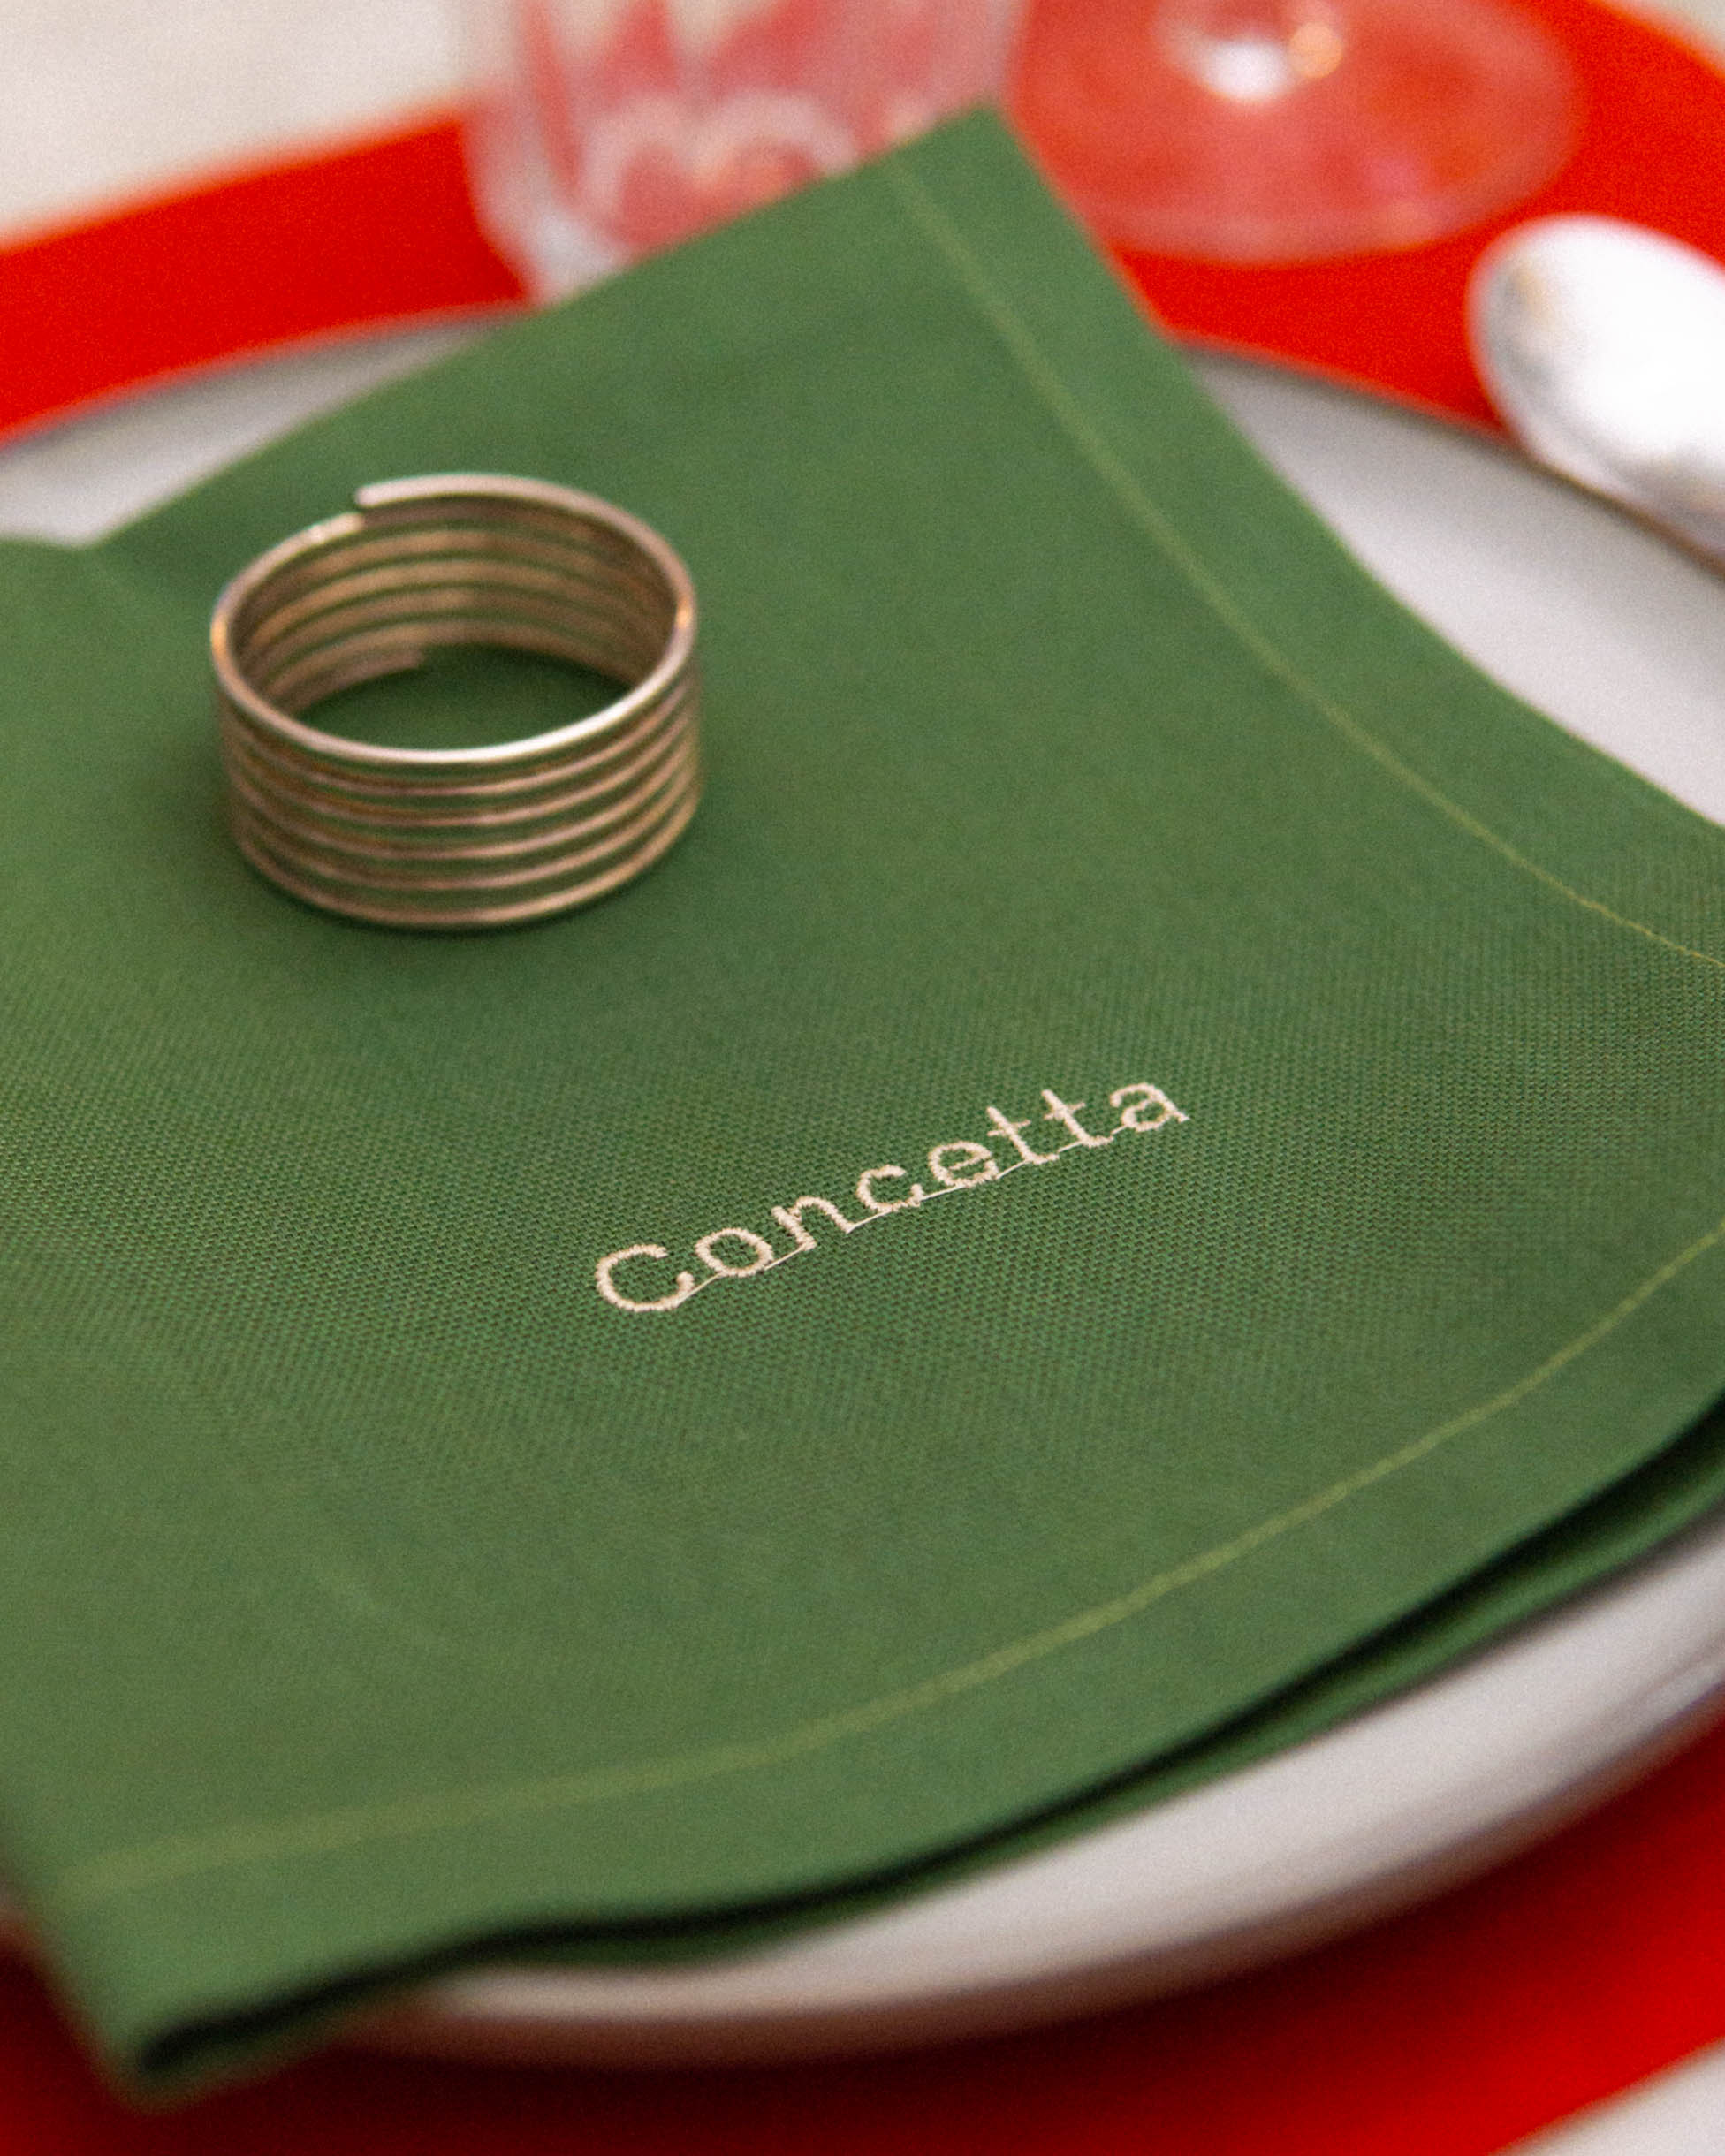 1 tovagliolo personalizzato | verde prato Concetta